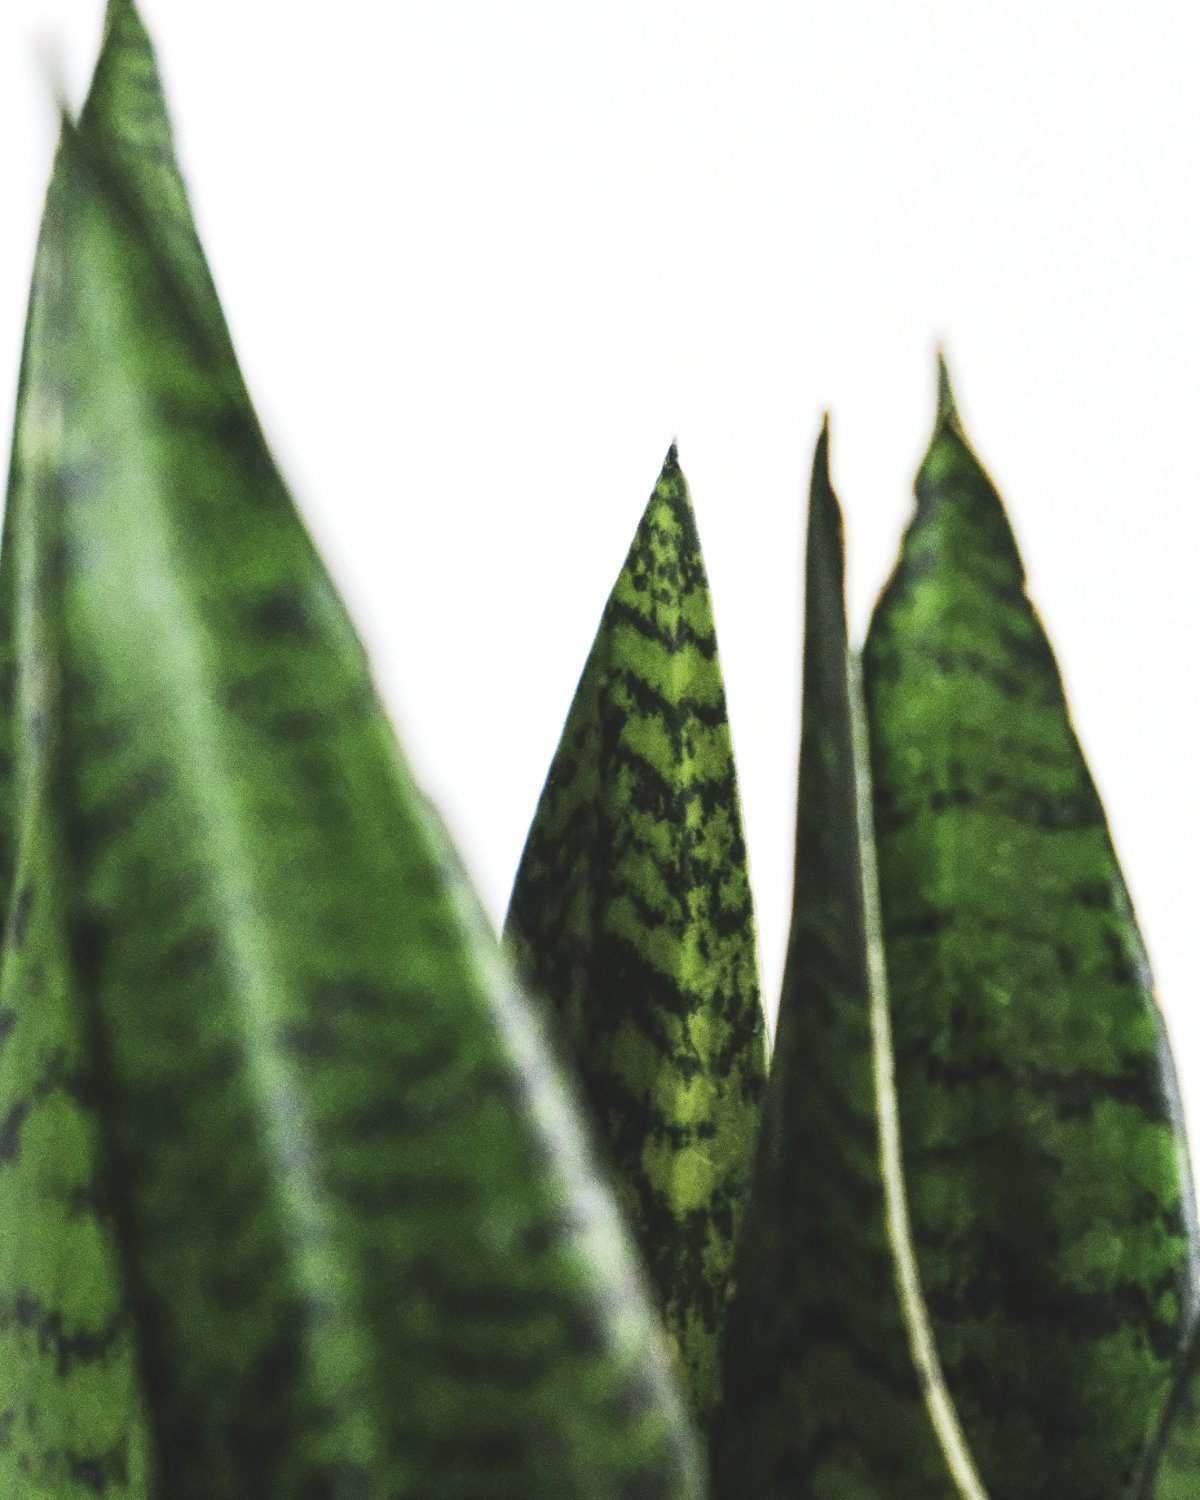 Spitzen der Blätter der grossen grünen Schwiegermutterzunge XL